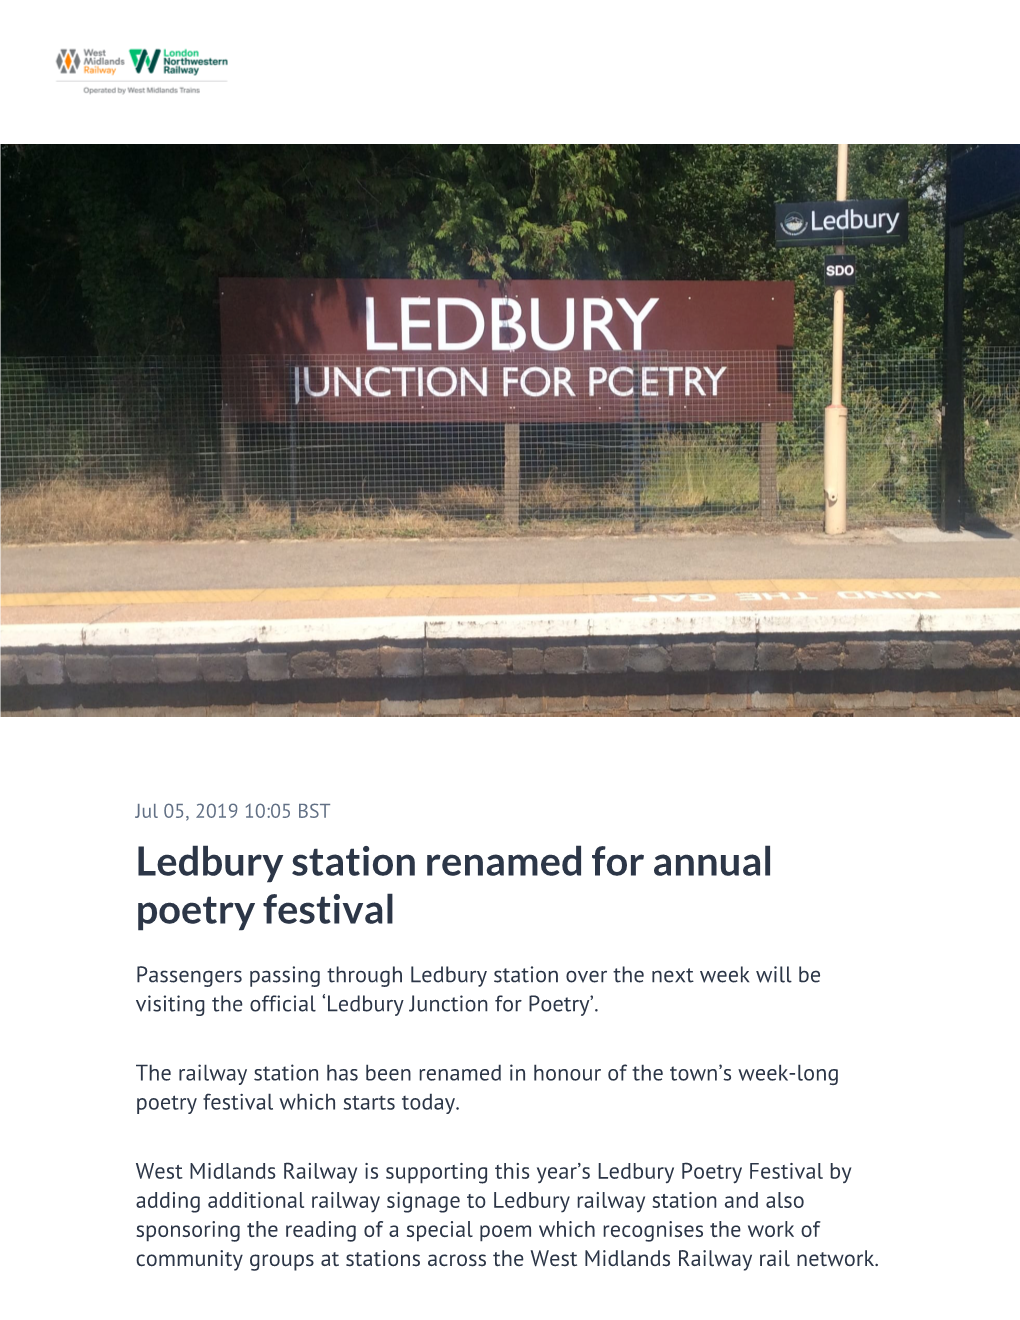 Ledbury Station Renamed for Annual Poetry Festival